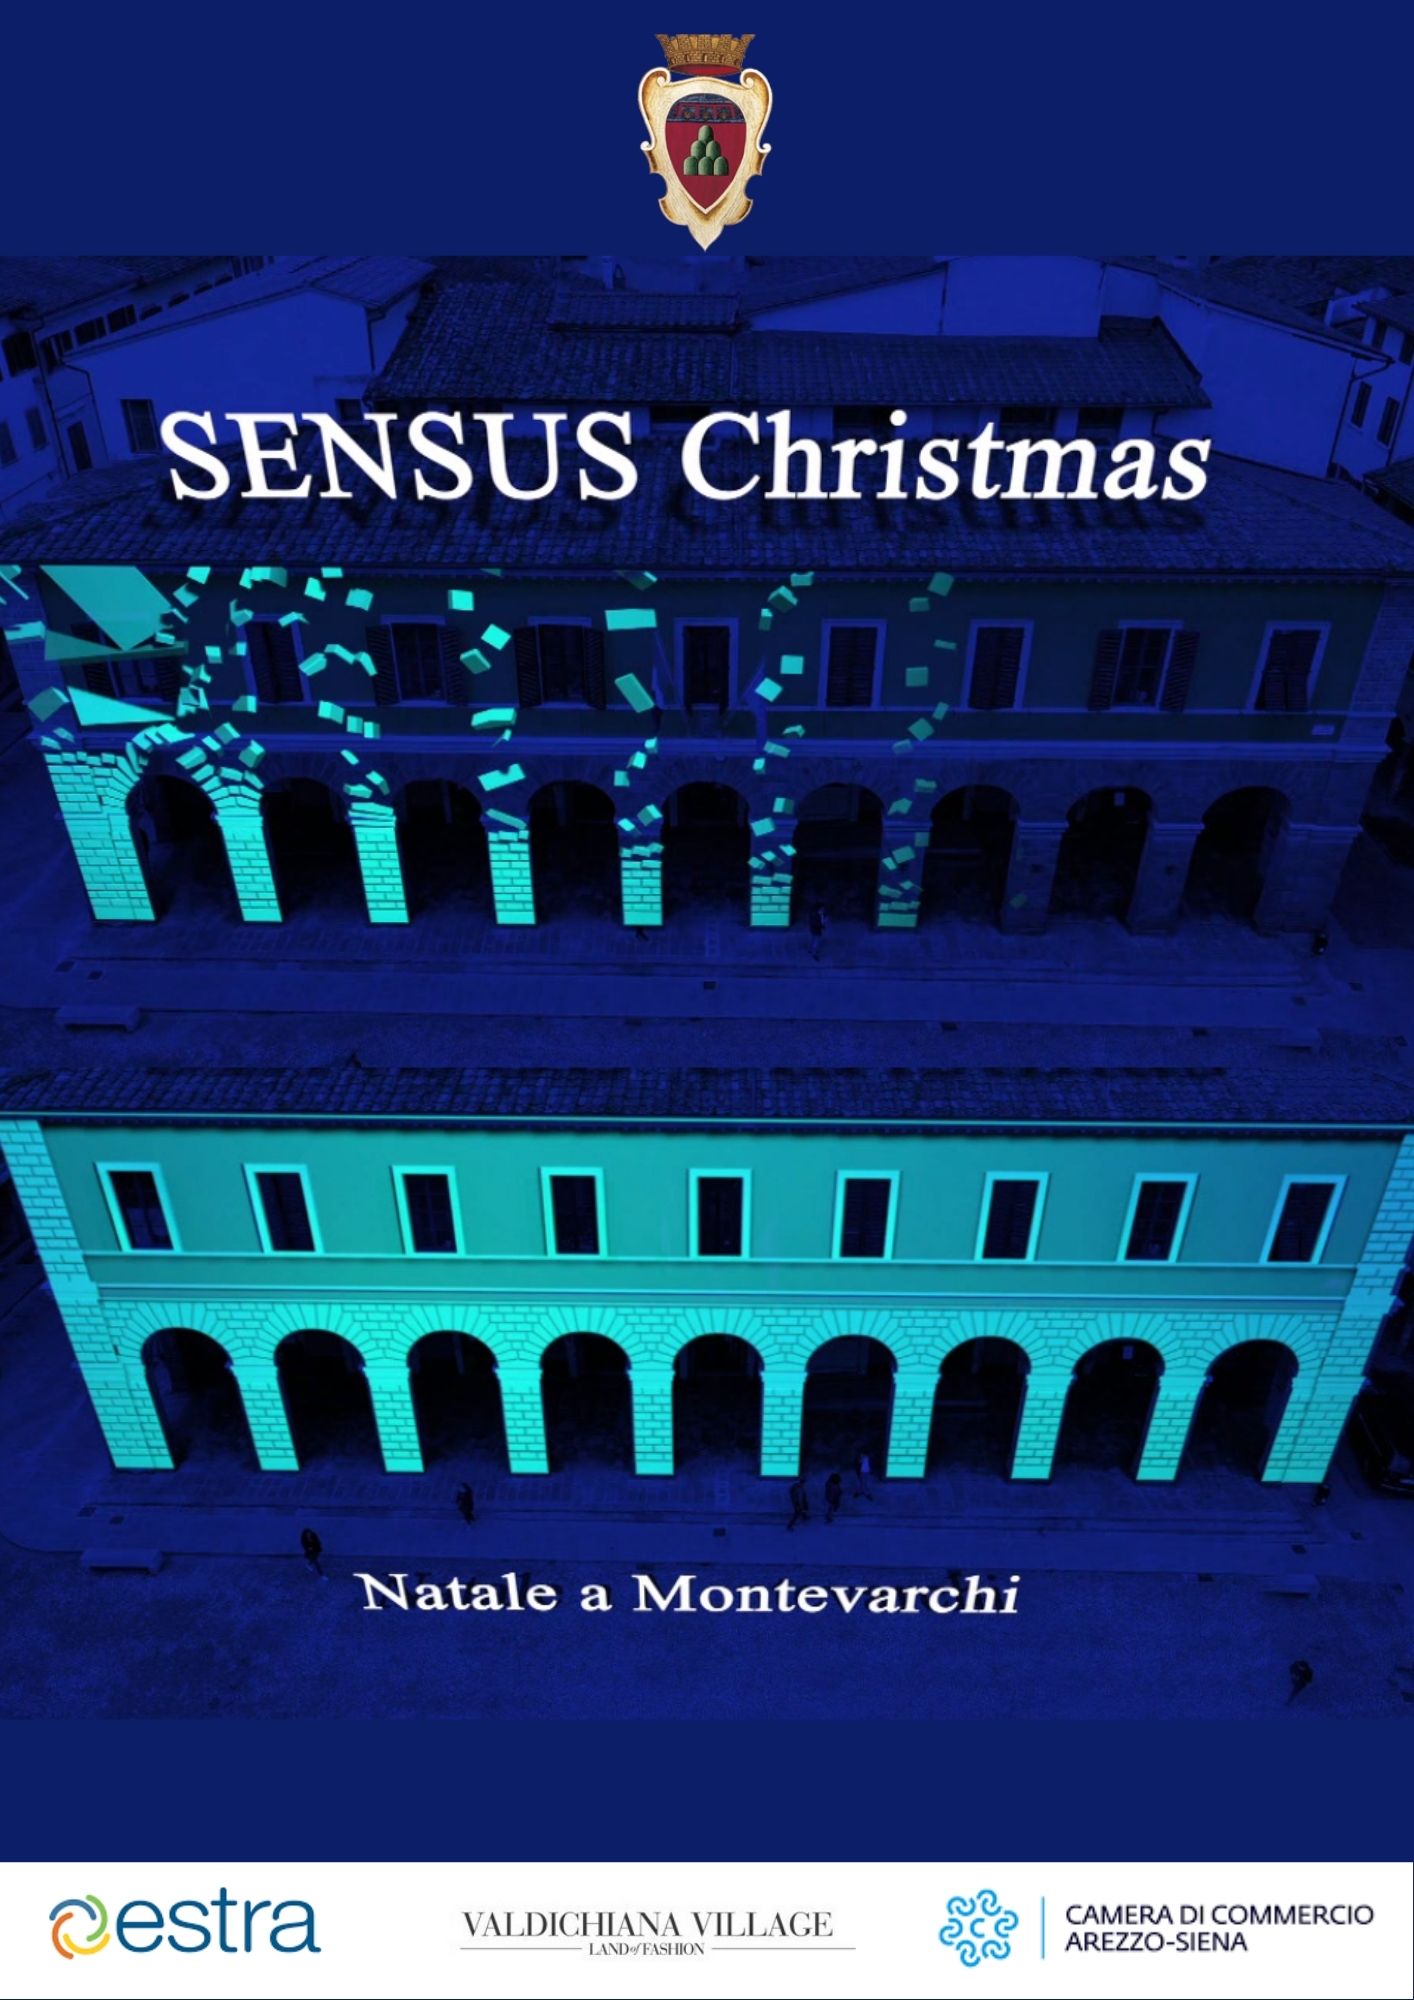 E’ Natale a Montevarchi: ecco “Sensus Christmas” dal 6 dicembre